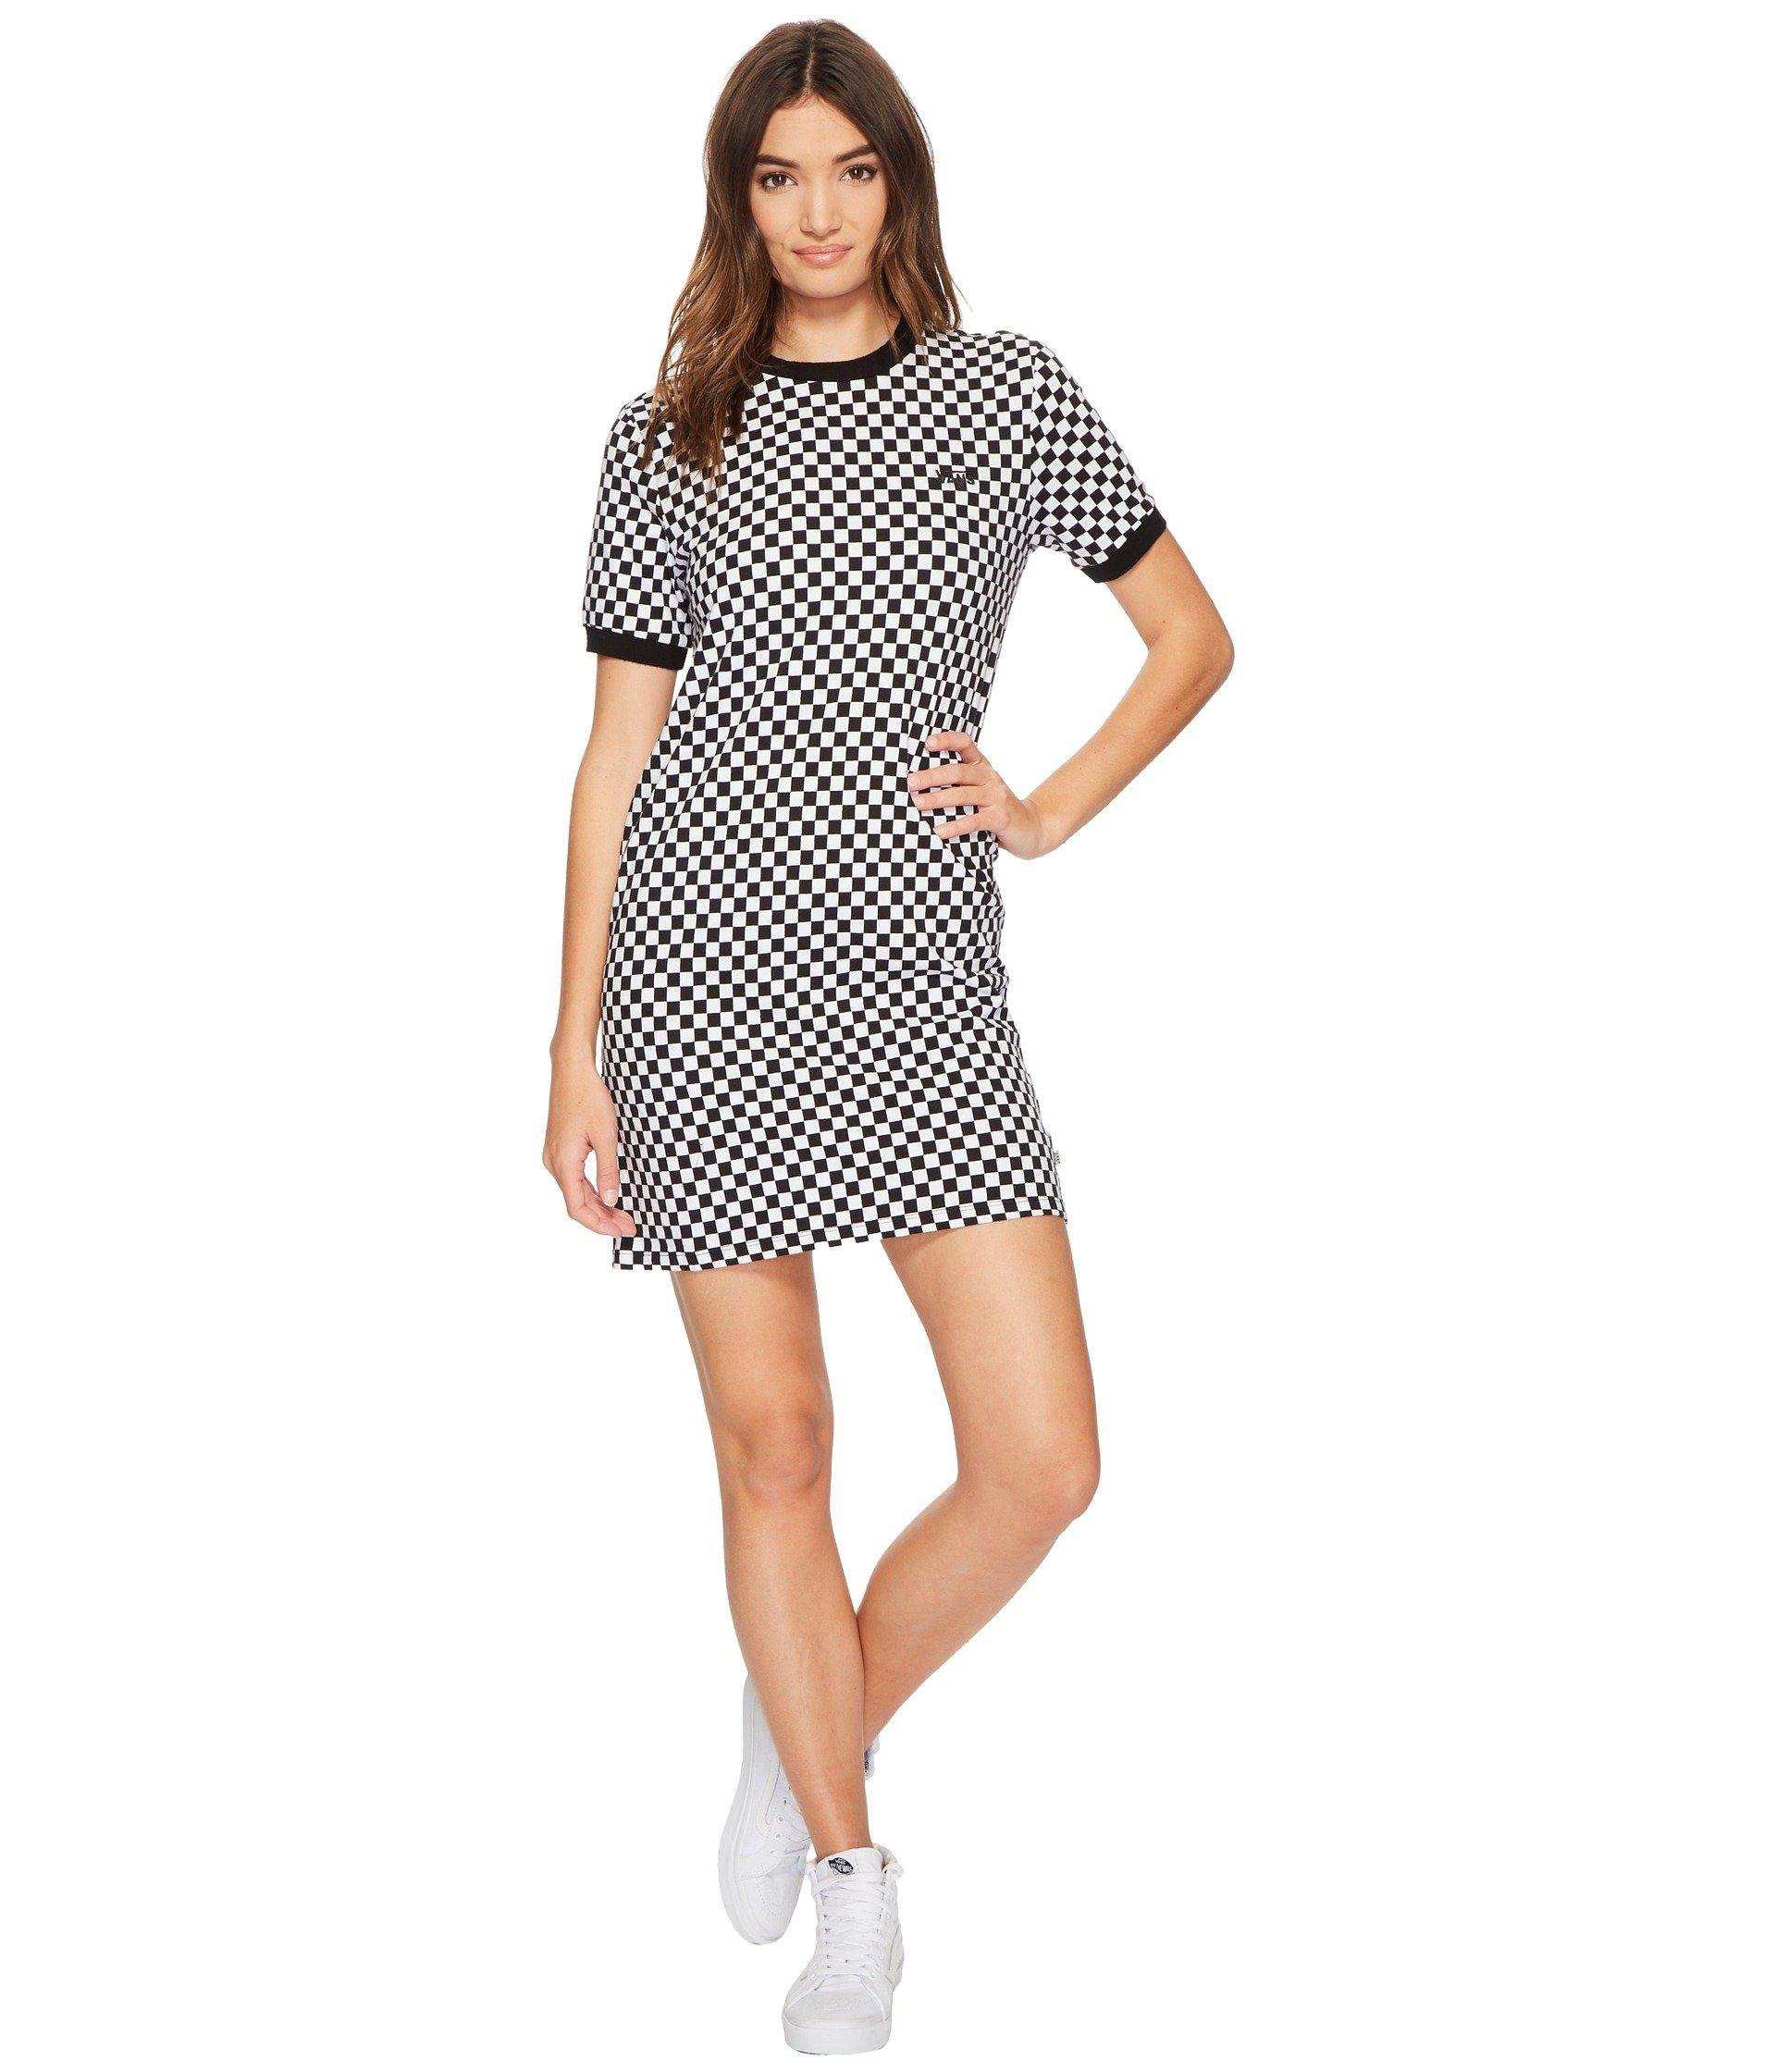 Checkerboard Vans Dress La France, SAVE 41% - raptorunderlayment.com